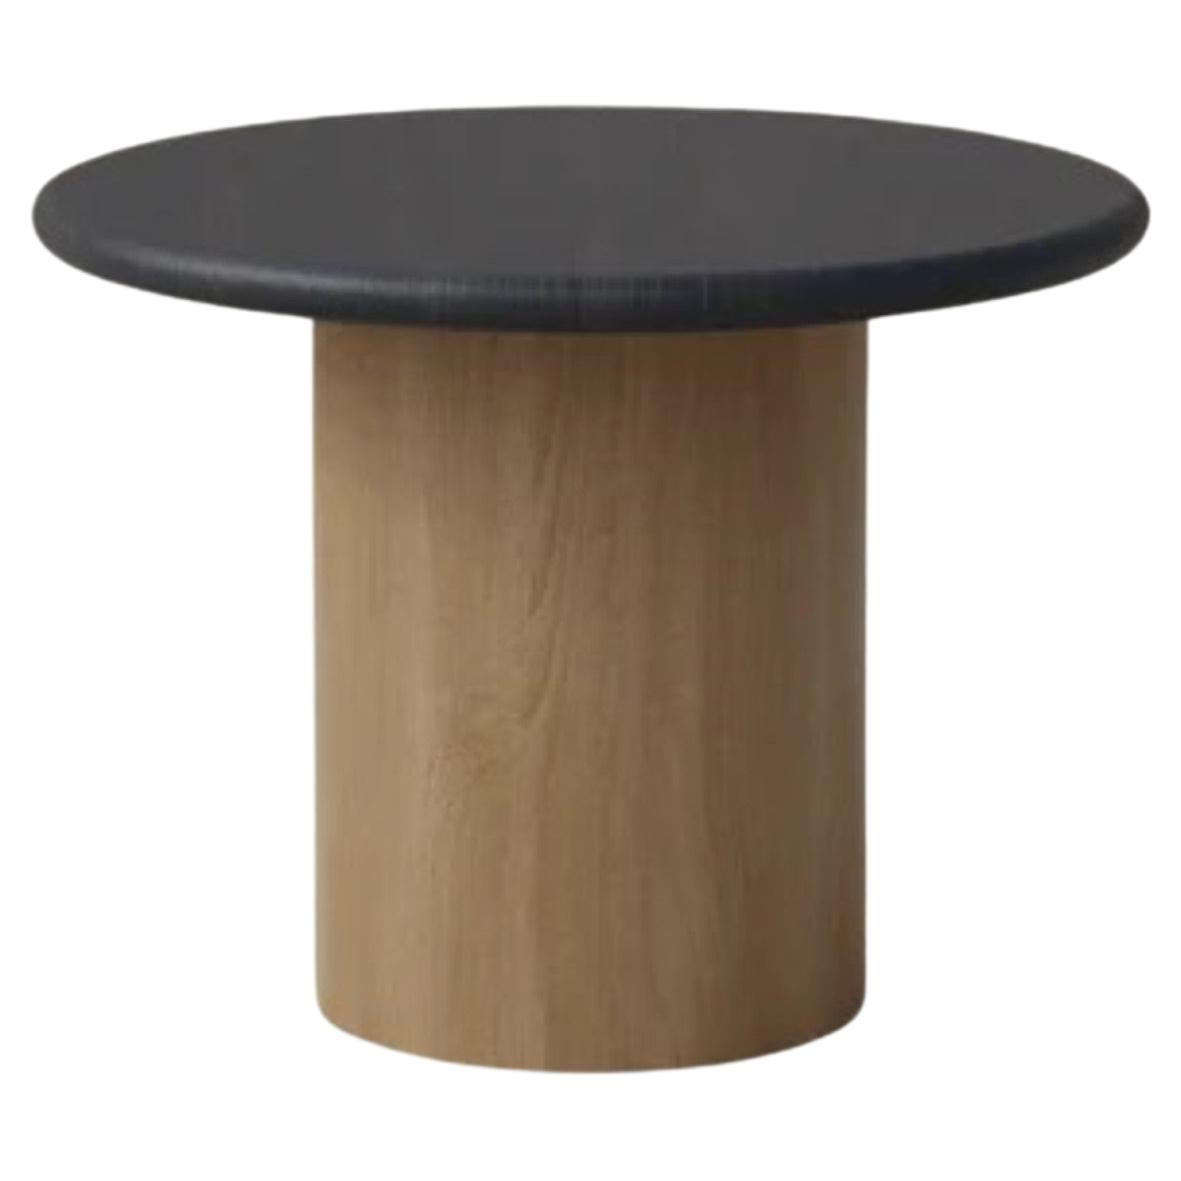 Raindrop Coffee Table, 500, Black Oak / Oak For Sale